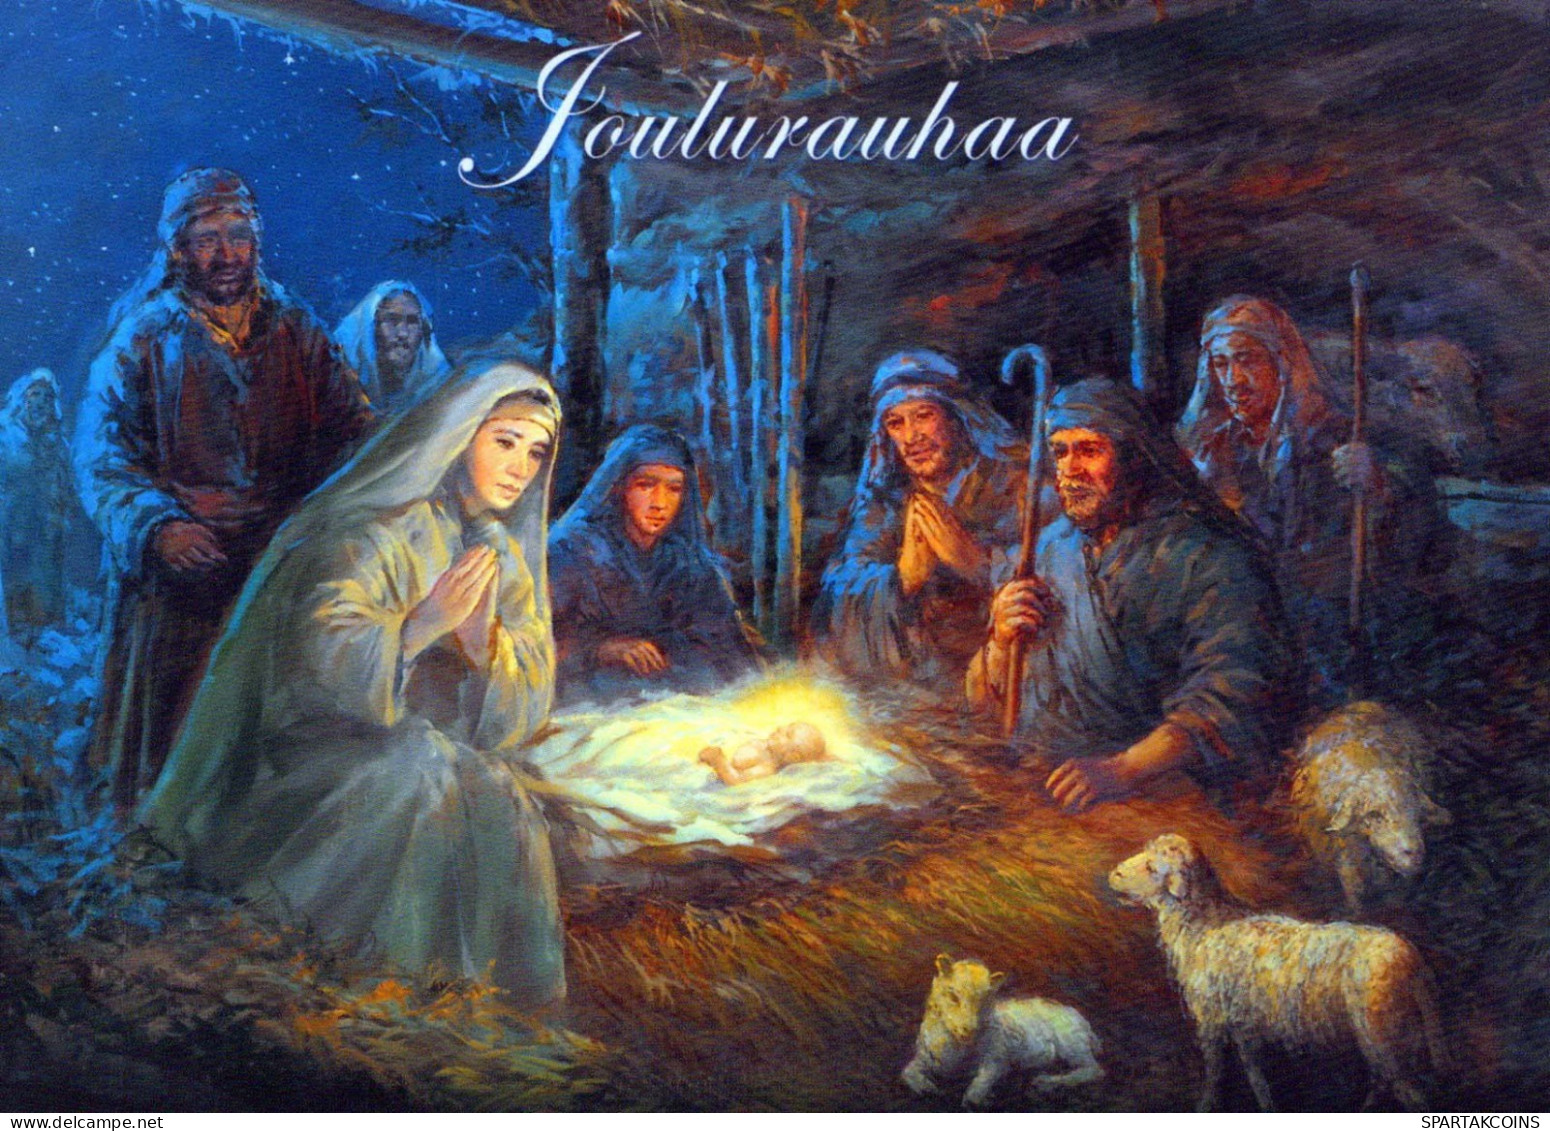 Jungfrau Maria Madonna Jesuskind Weihnachten Religion #PBB631.A - Virgen Maria Y Las Madonnas